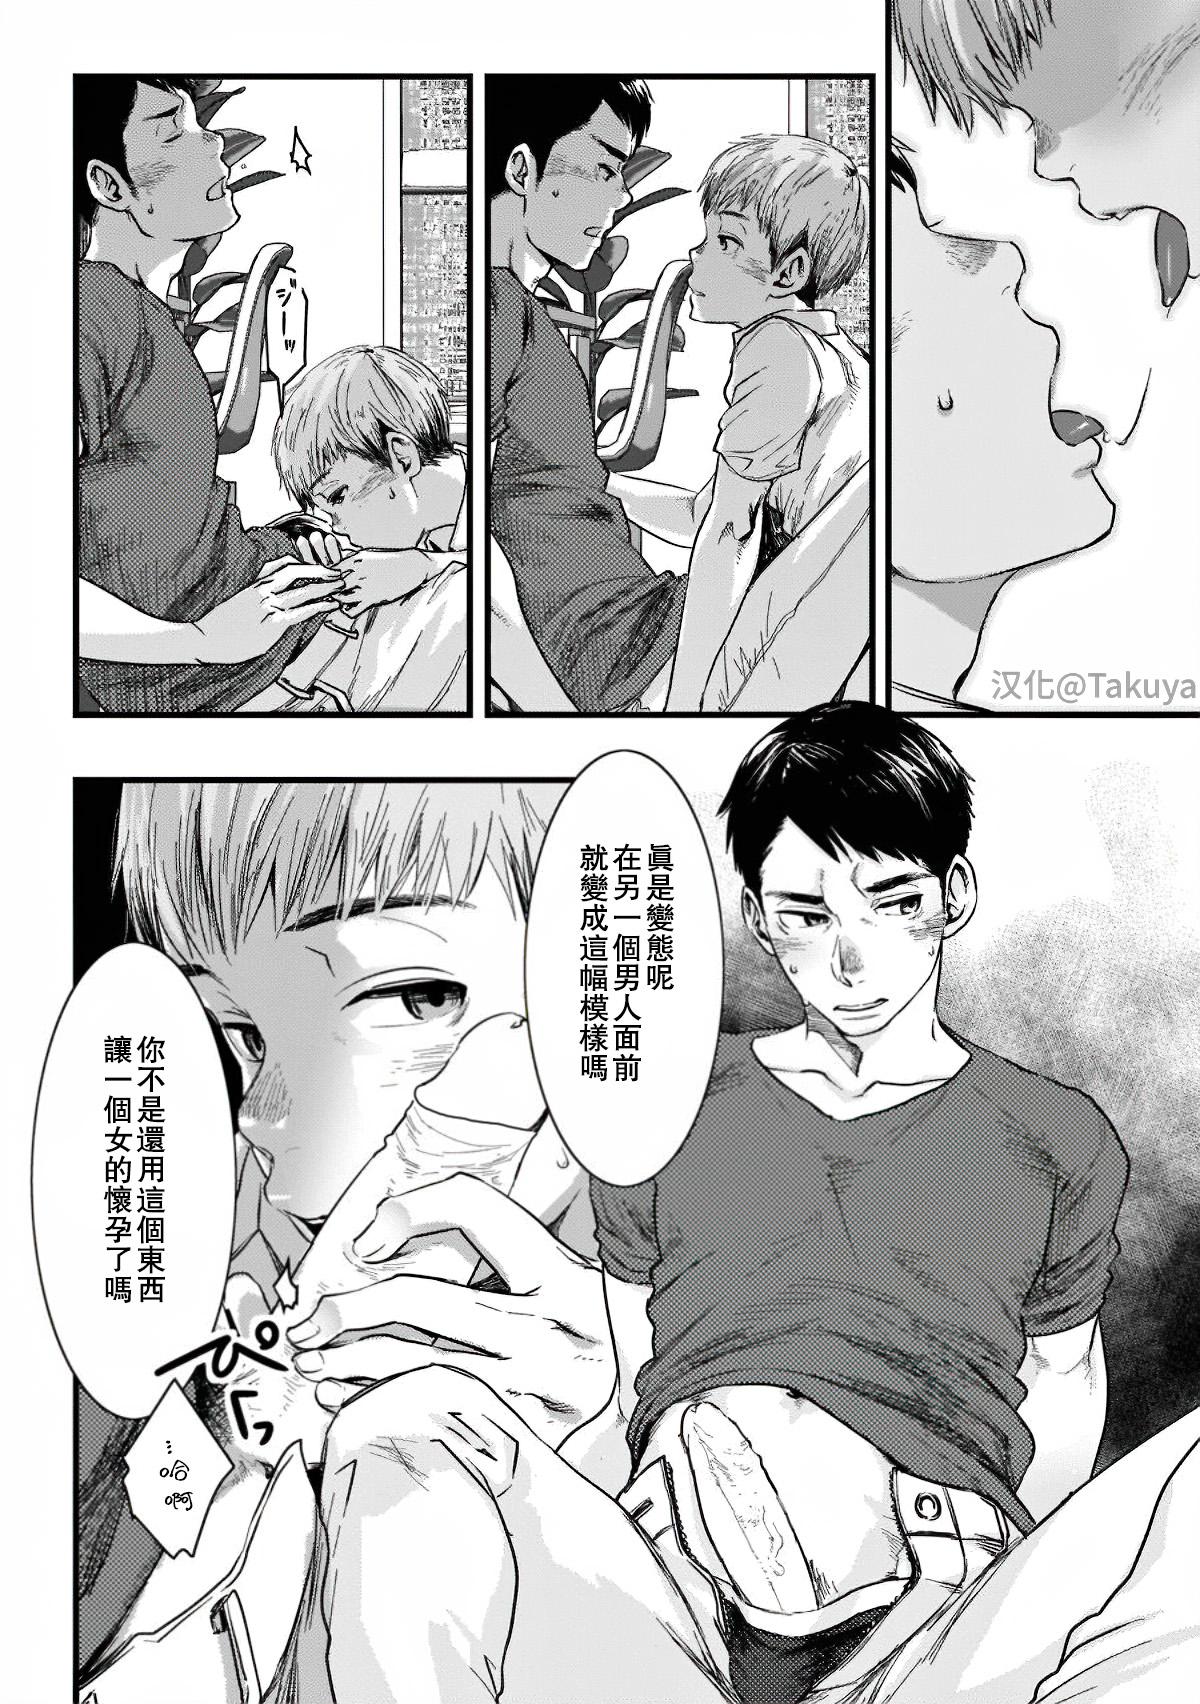 Three Some Itai no wa Kokoro desu | 心之所痛 Piercings - Page 8